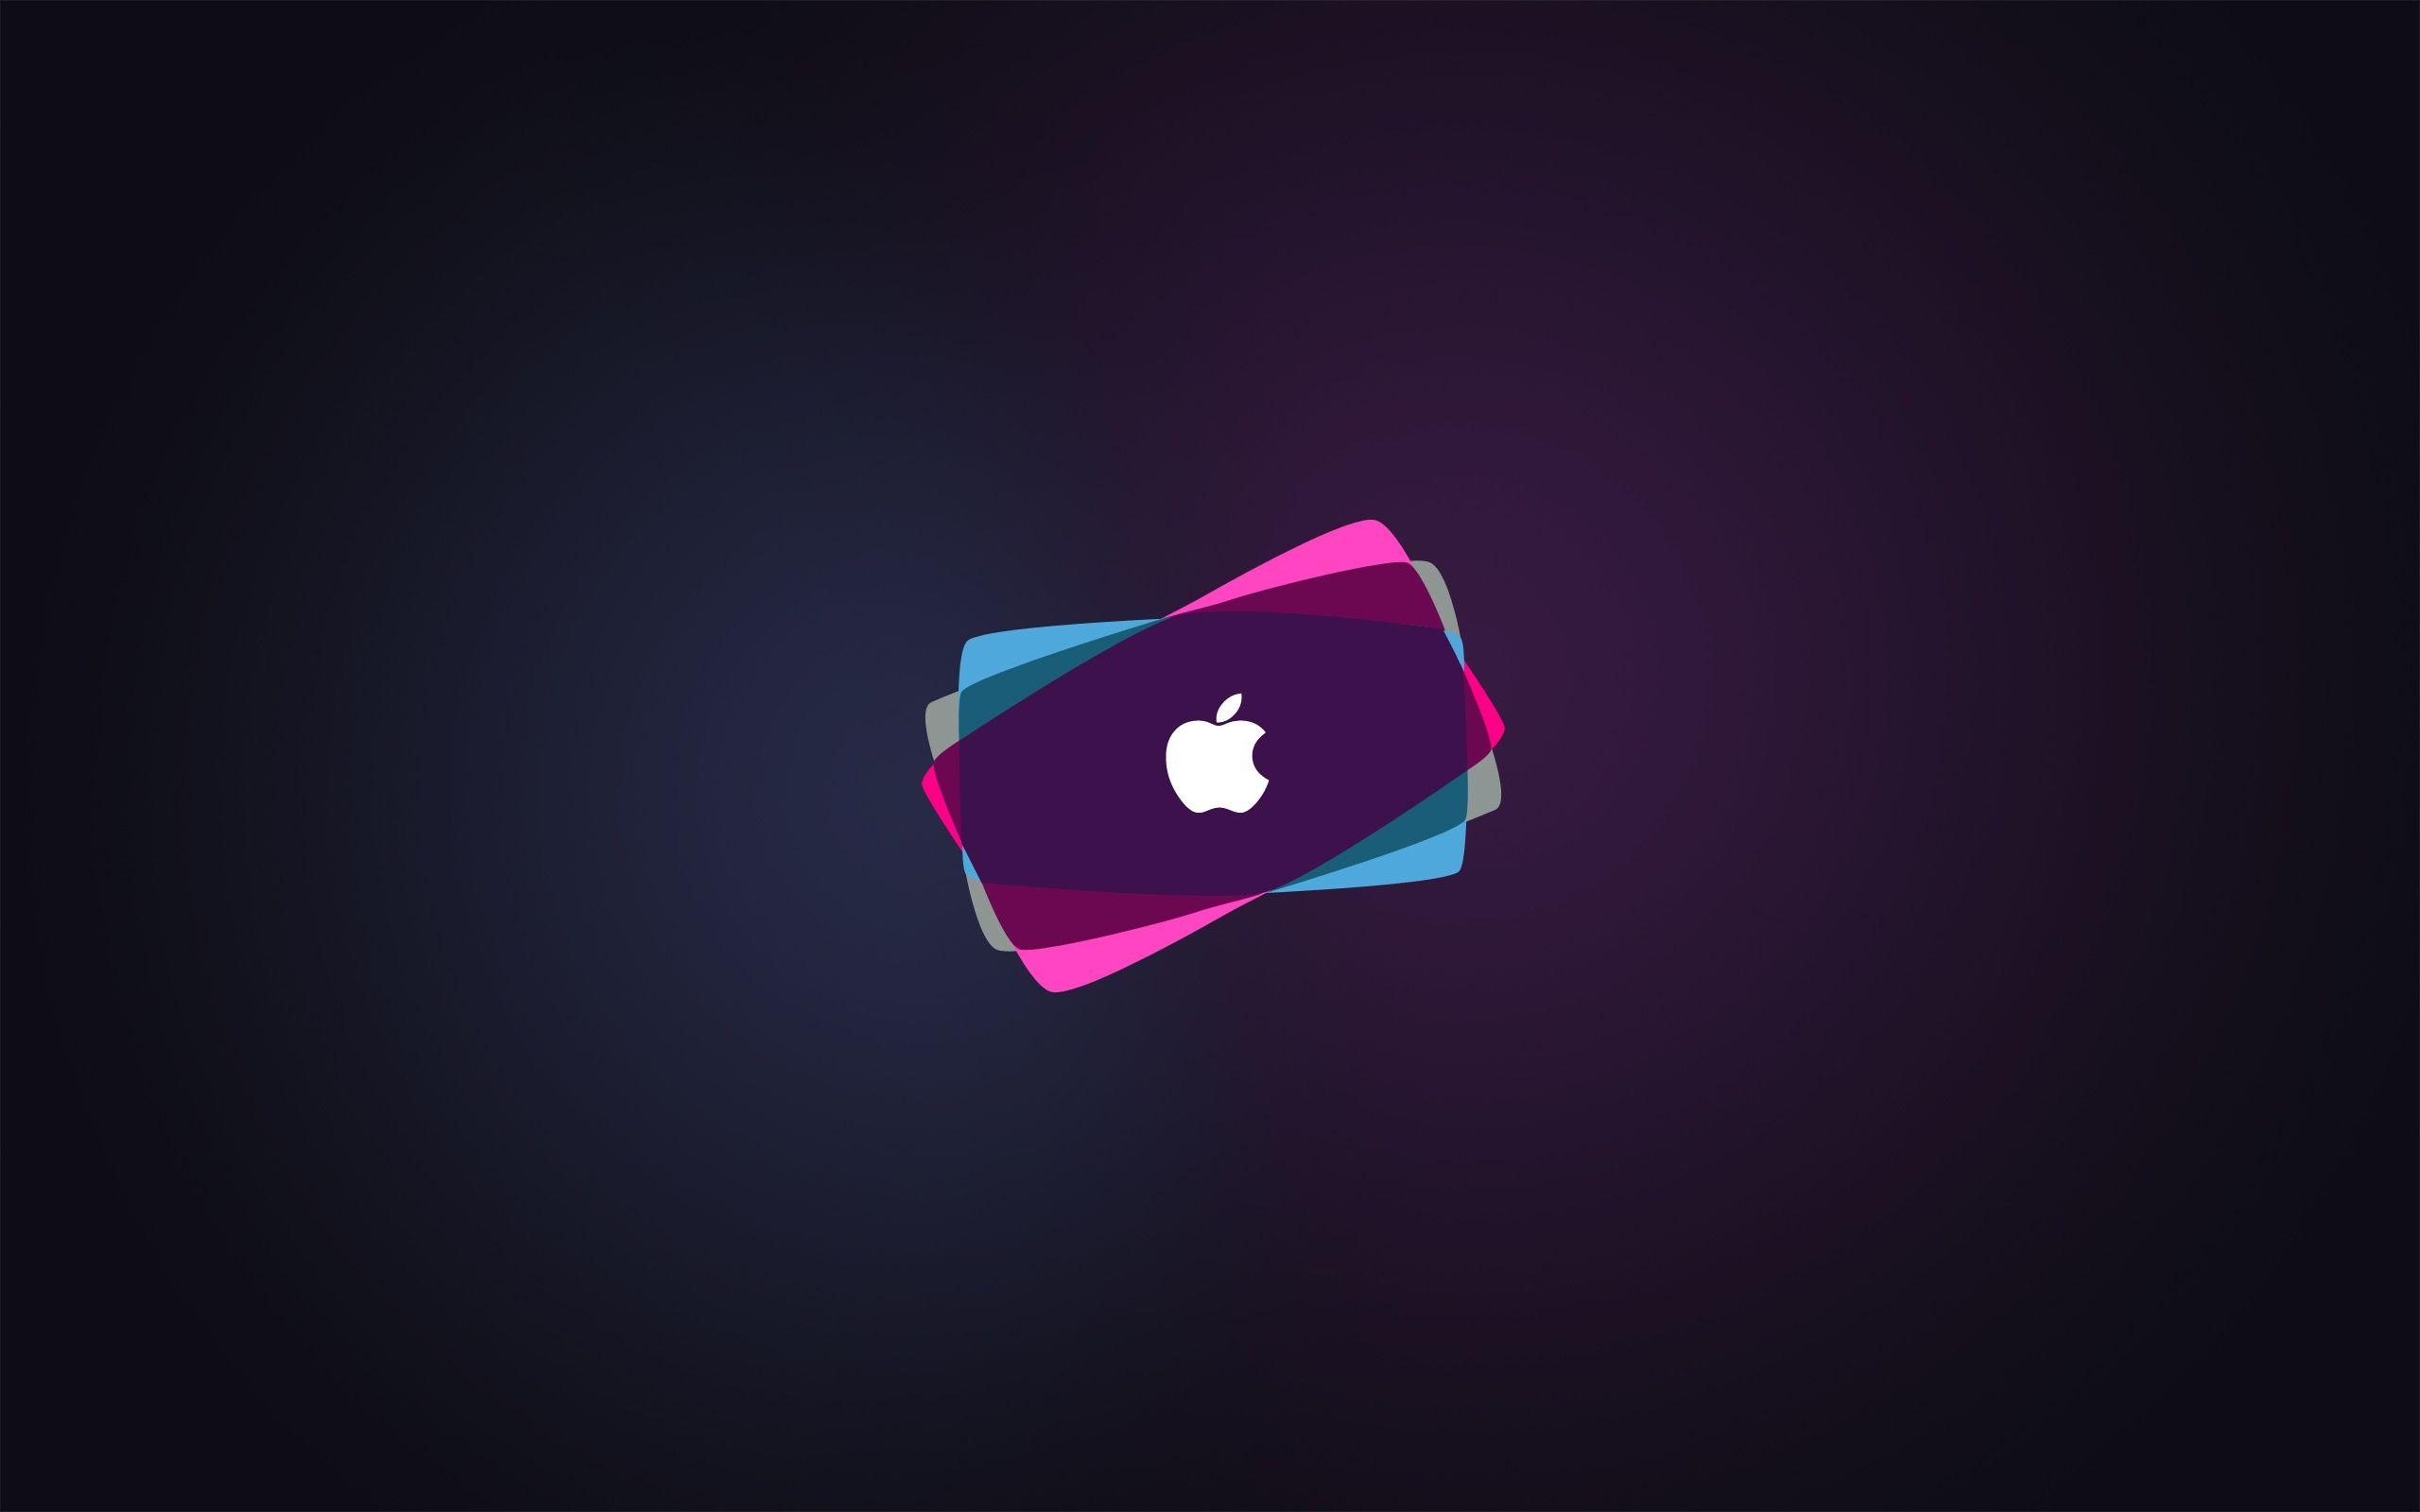 40 Gambar Apple Iphone Wallpaper Hd Download Free terbaru 2020